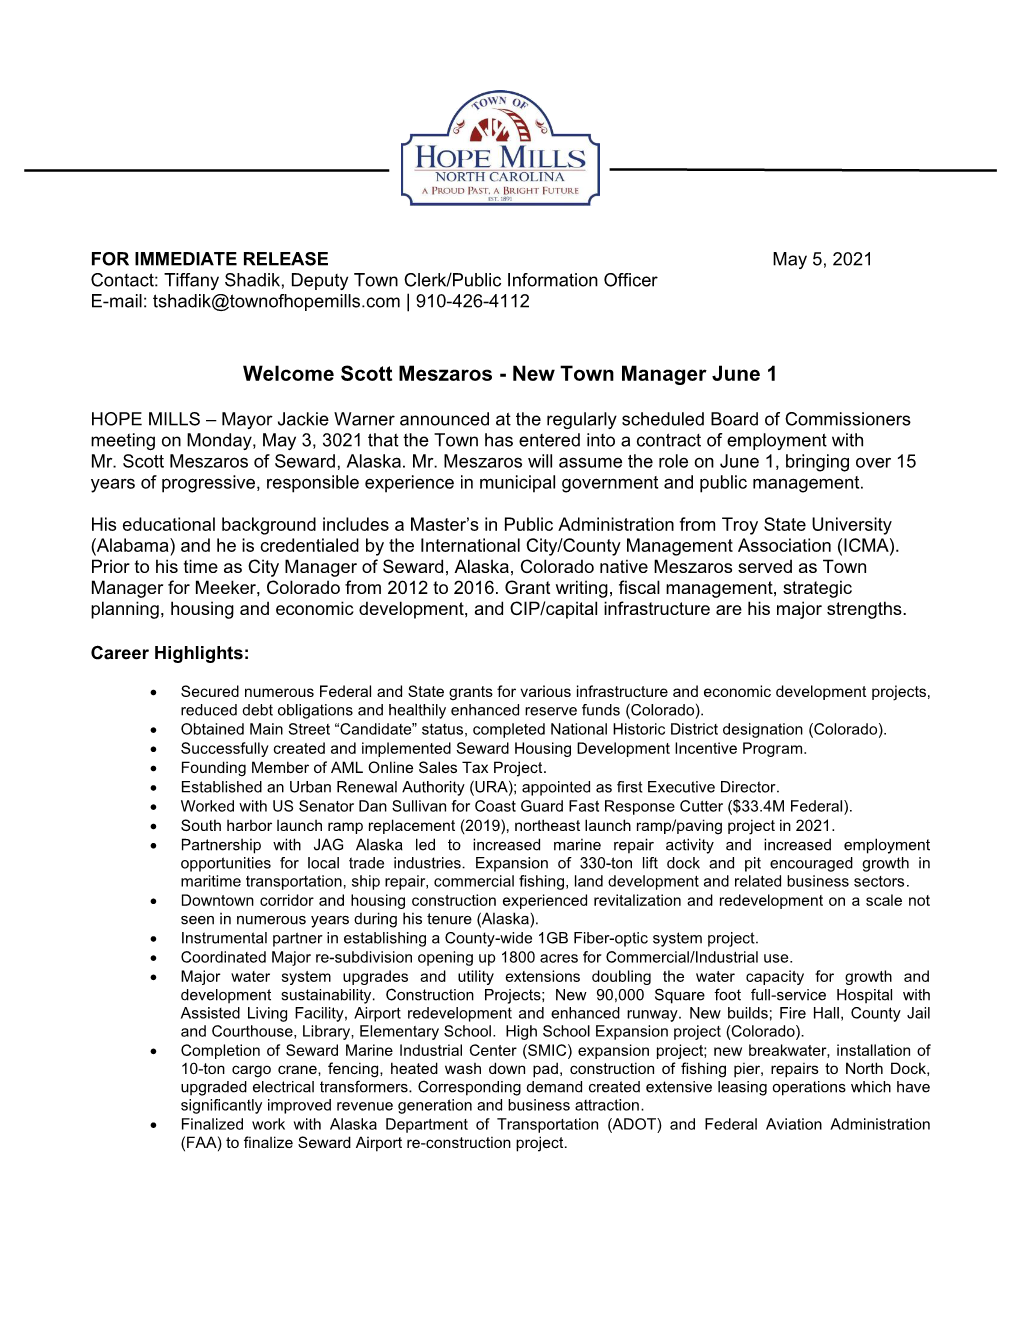 Scott Meszaros - New Town Manager June 1